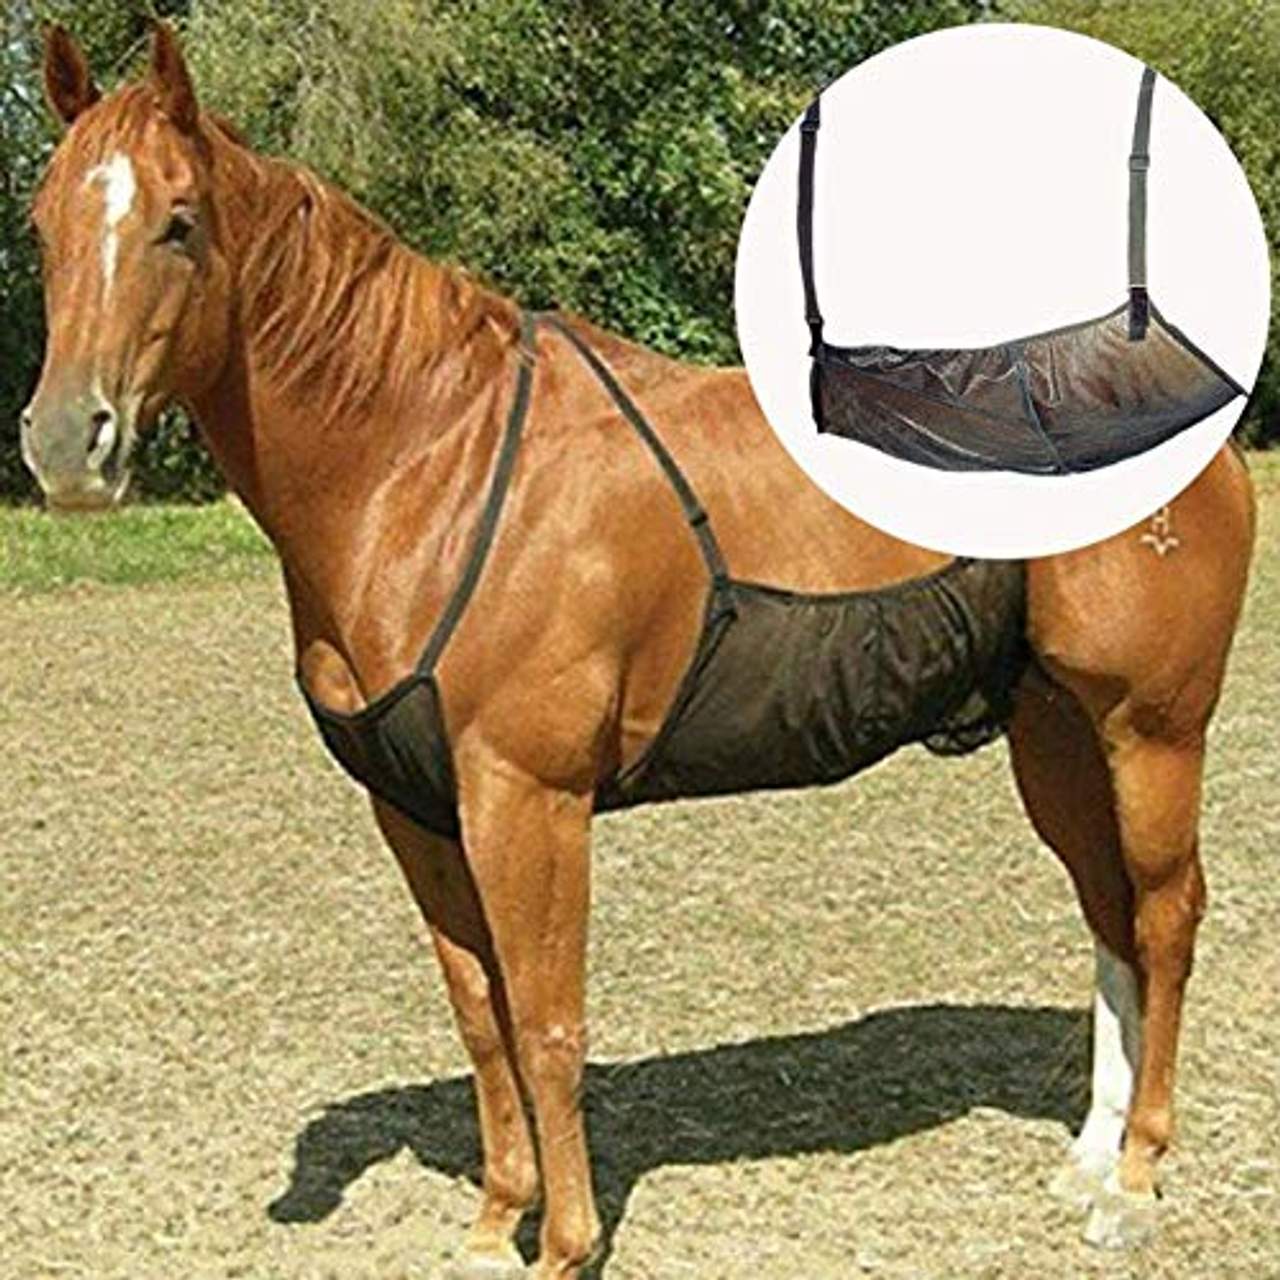 WOFEI Outdoordecke Horse Fly Rug Cover Schutz Bequem Atmungsaktiv